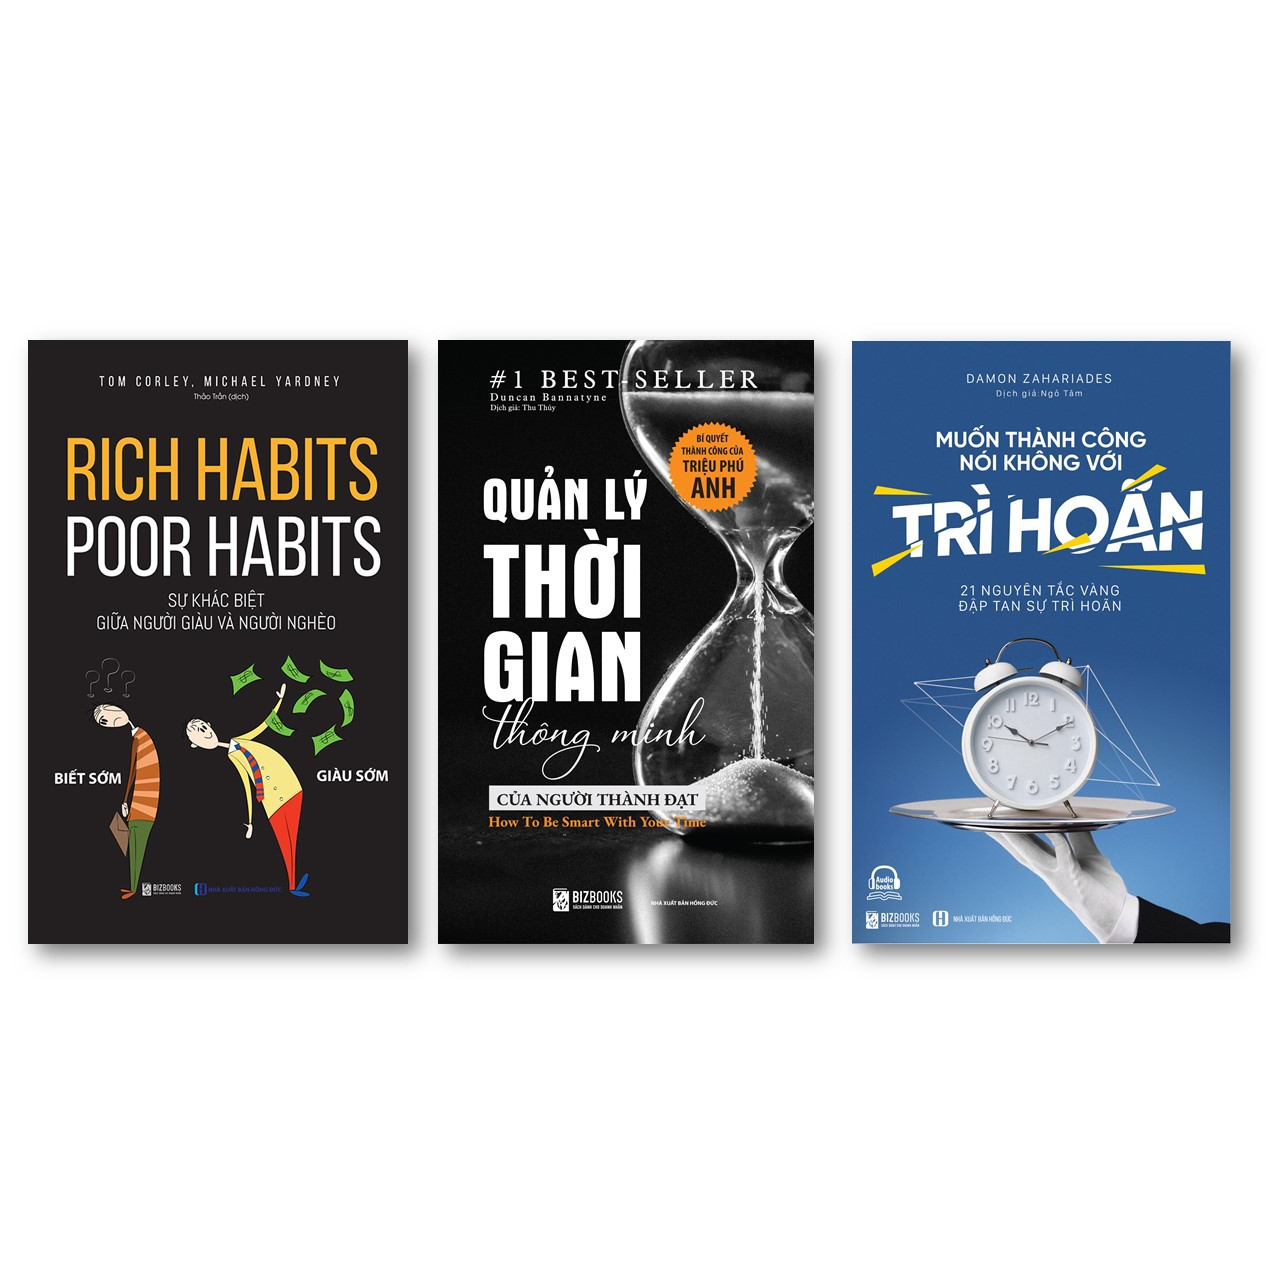 Bộ 3 cuốn sách kỹ năng mềm độc nhất mọi thời đại NT"Rich habits, poor habits: Sự khác biệt giữa người giàu và người nghèo ,Quản lý thời gian thông minh của người thành đạt: Bí quyết thành công của triệu phú Anh , Muốn thành công nói không với trì hoãn – 21 nguyên tắc vàng đập tan sự trì hoãn''